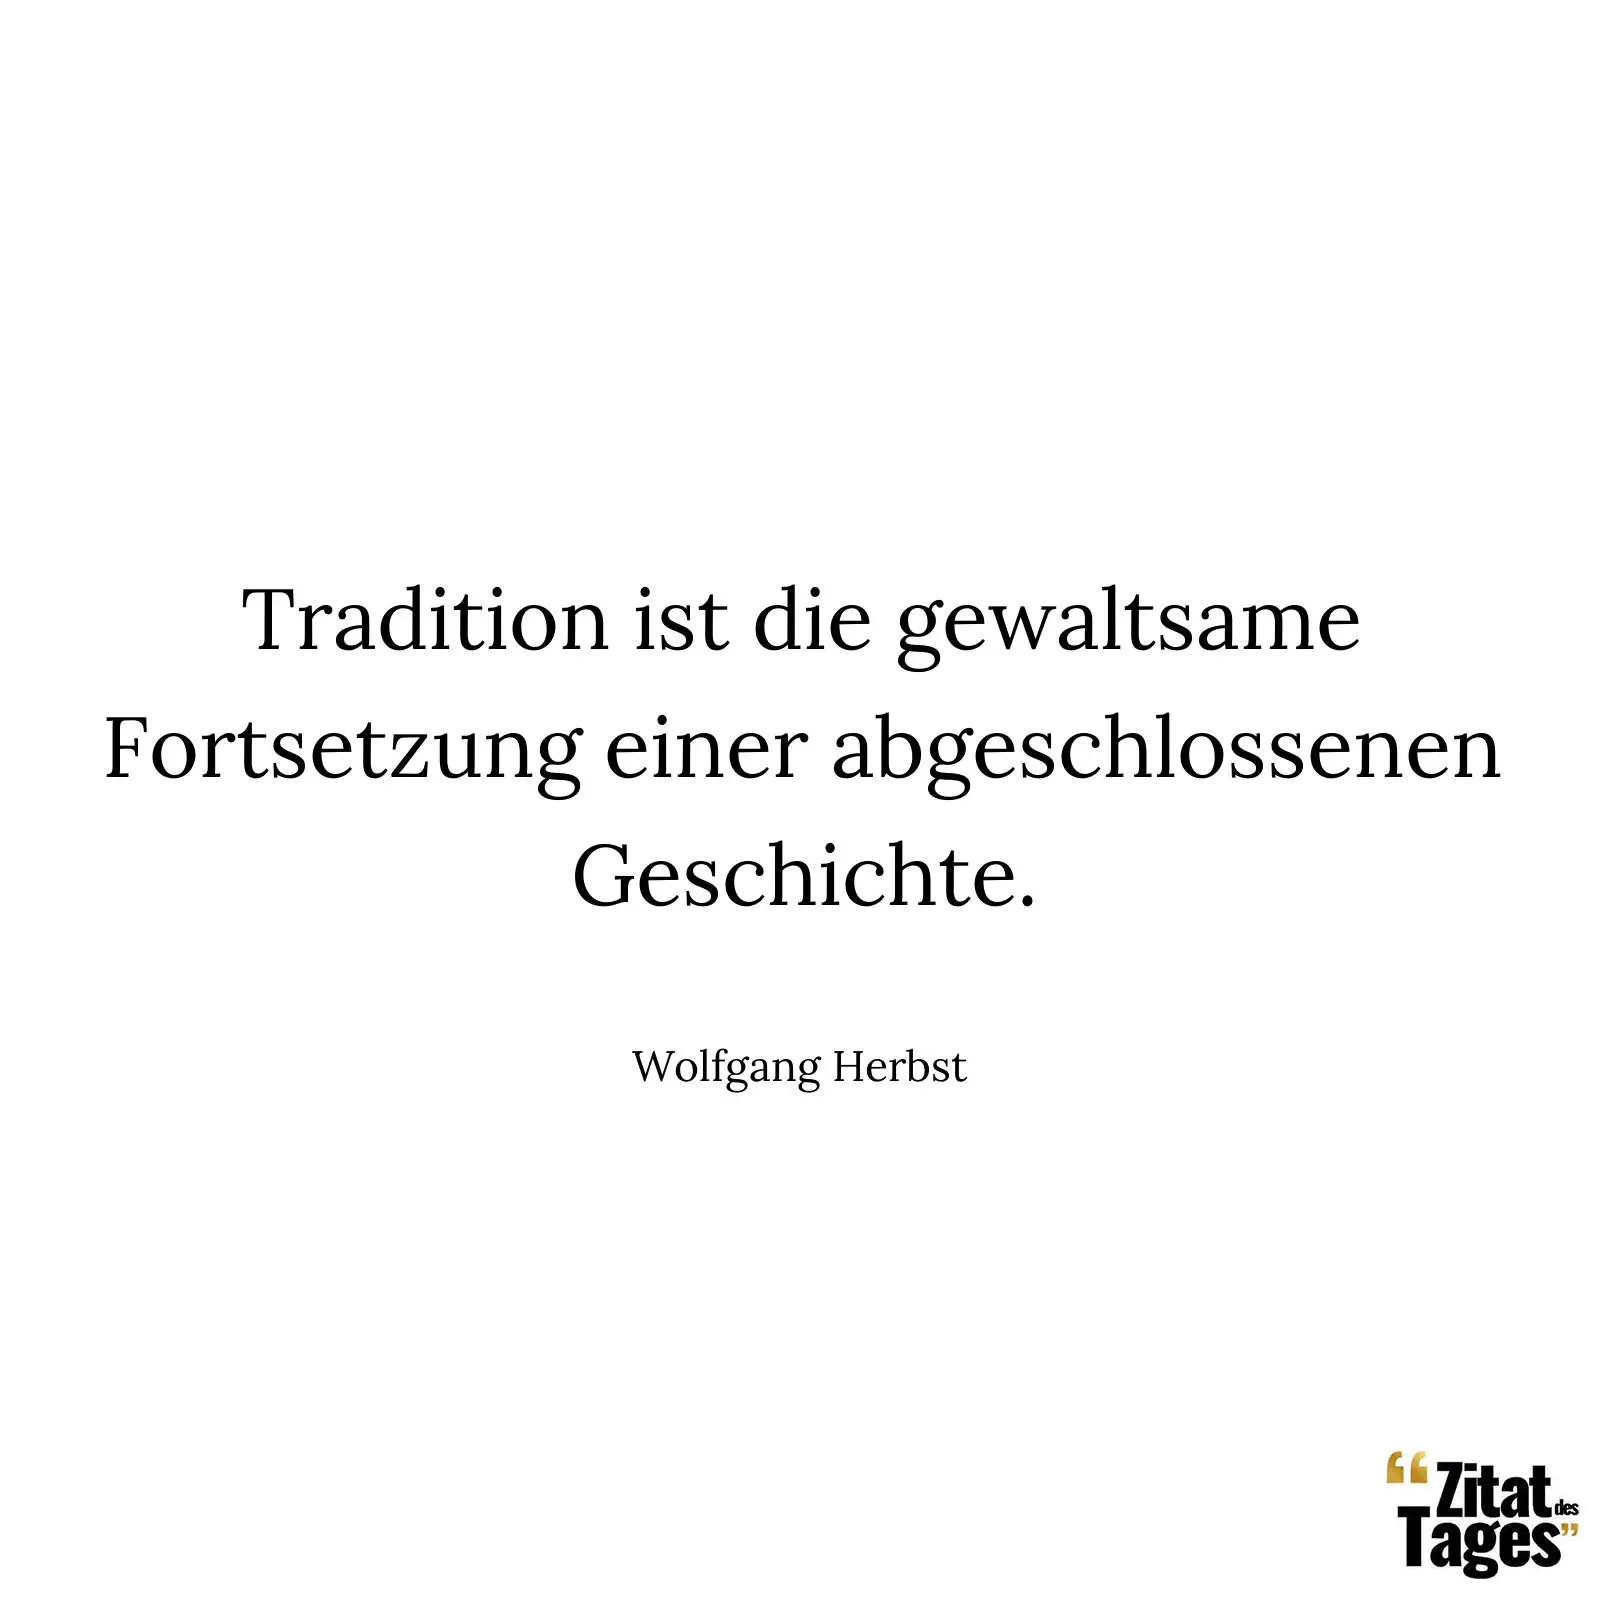 Tradition ist die gewaltsame Fortsetzung einer abgeschlossenen Geschichte. - Wolfgang Herbst